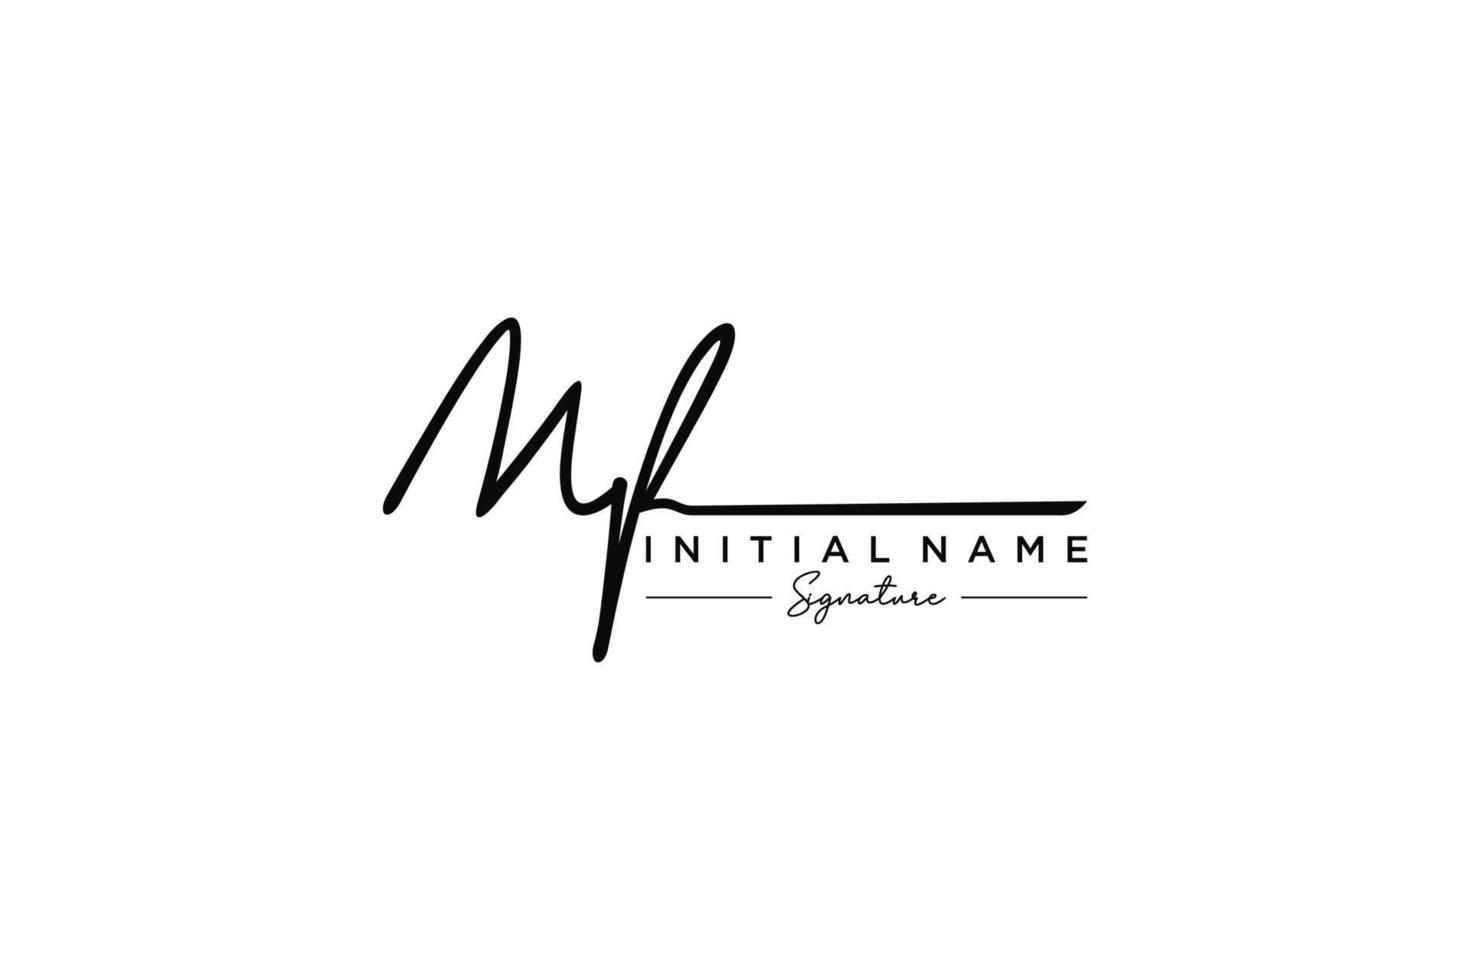 vetor inicial de modelo de logotipo de assinatura mf. ilustração vetorial de letras de caligrafia desenhada à mão.